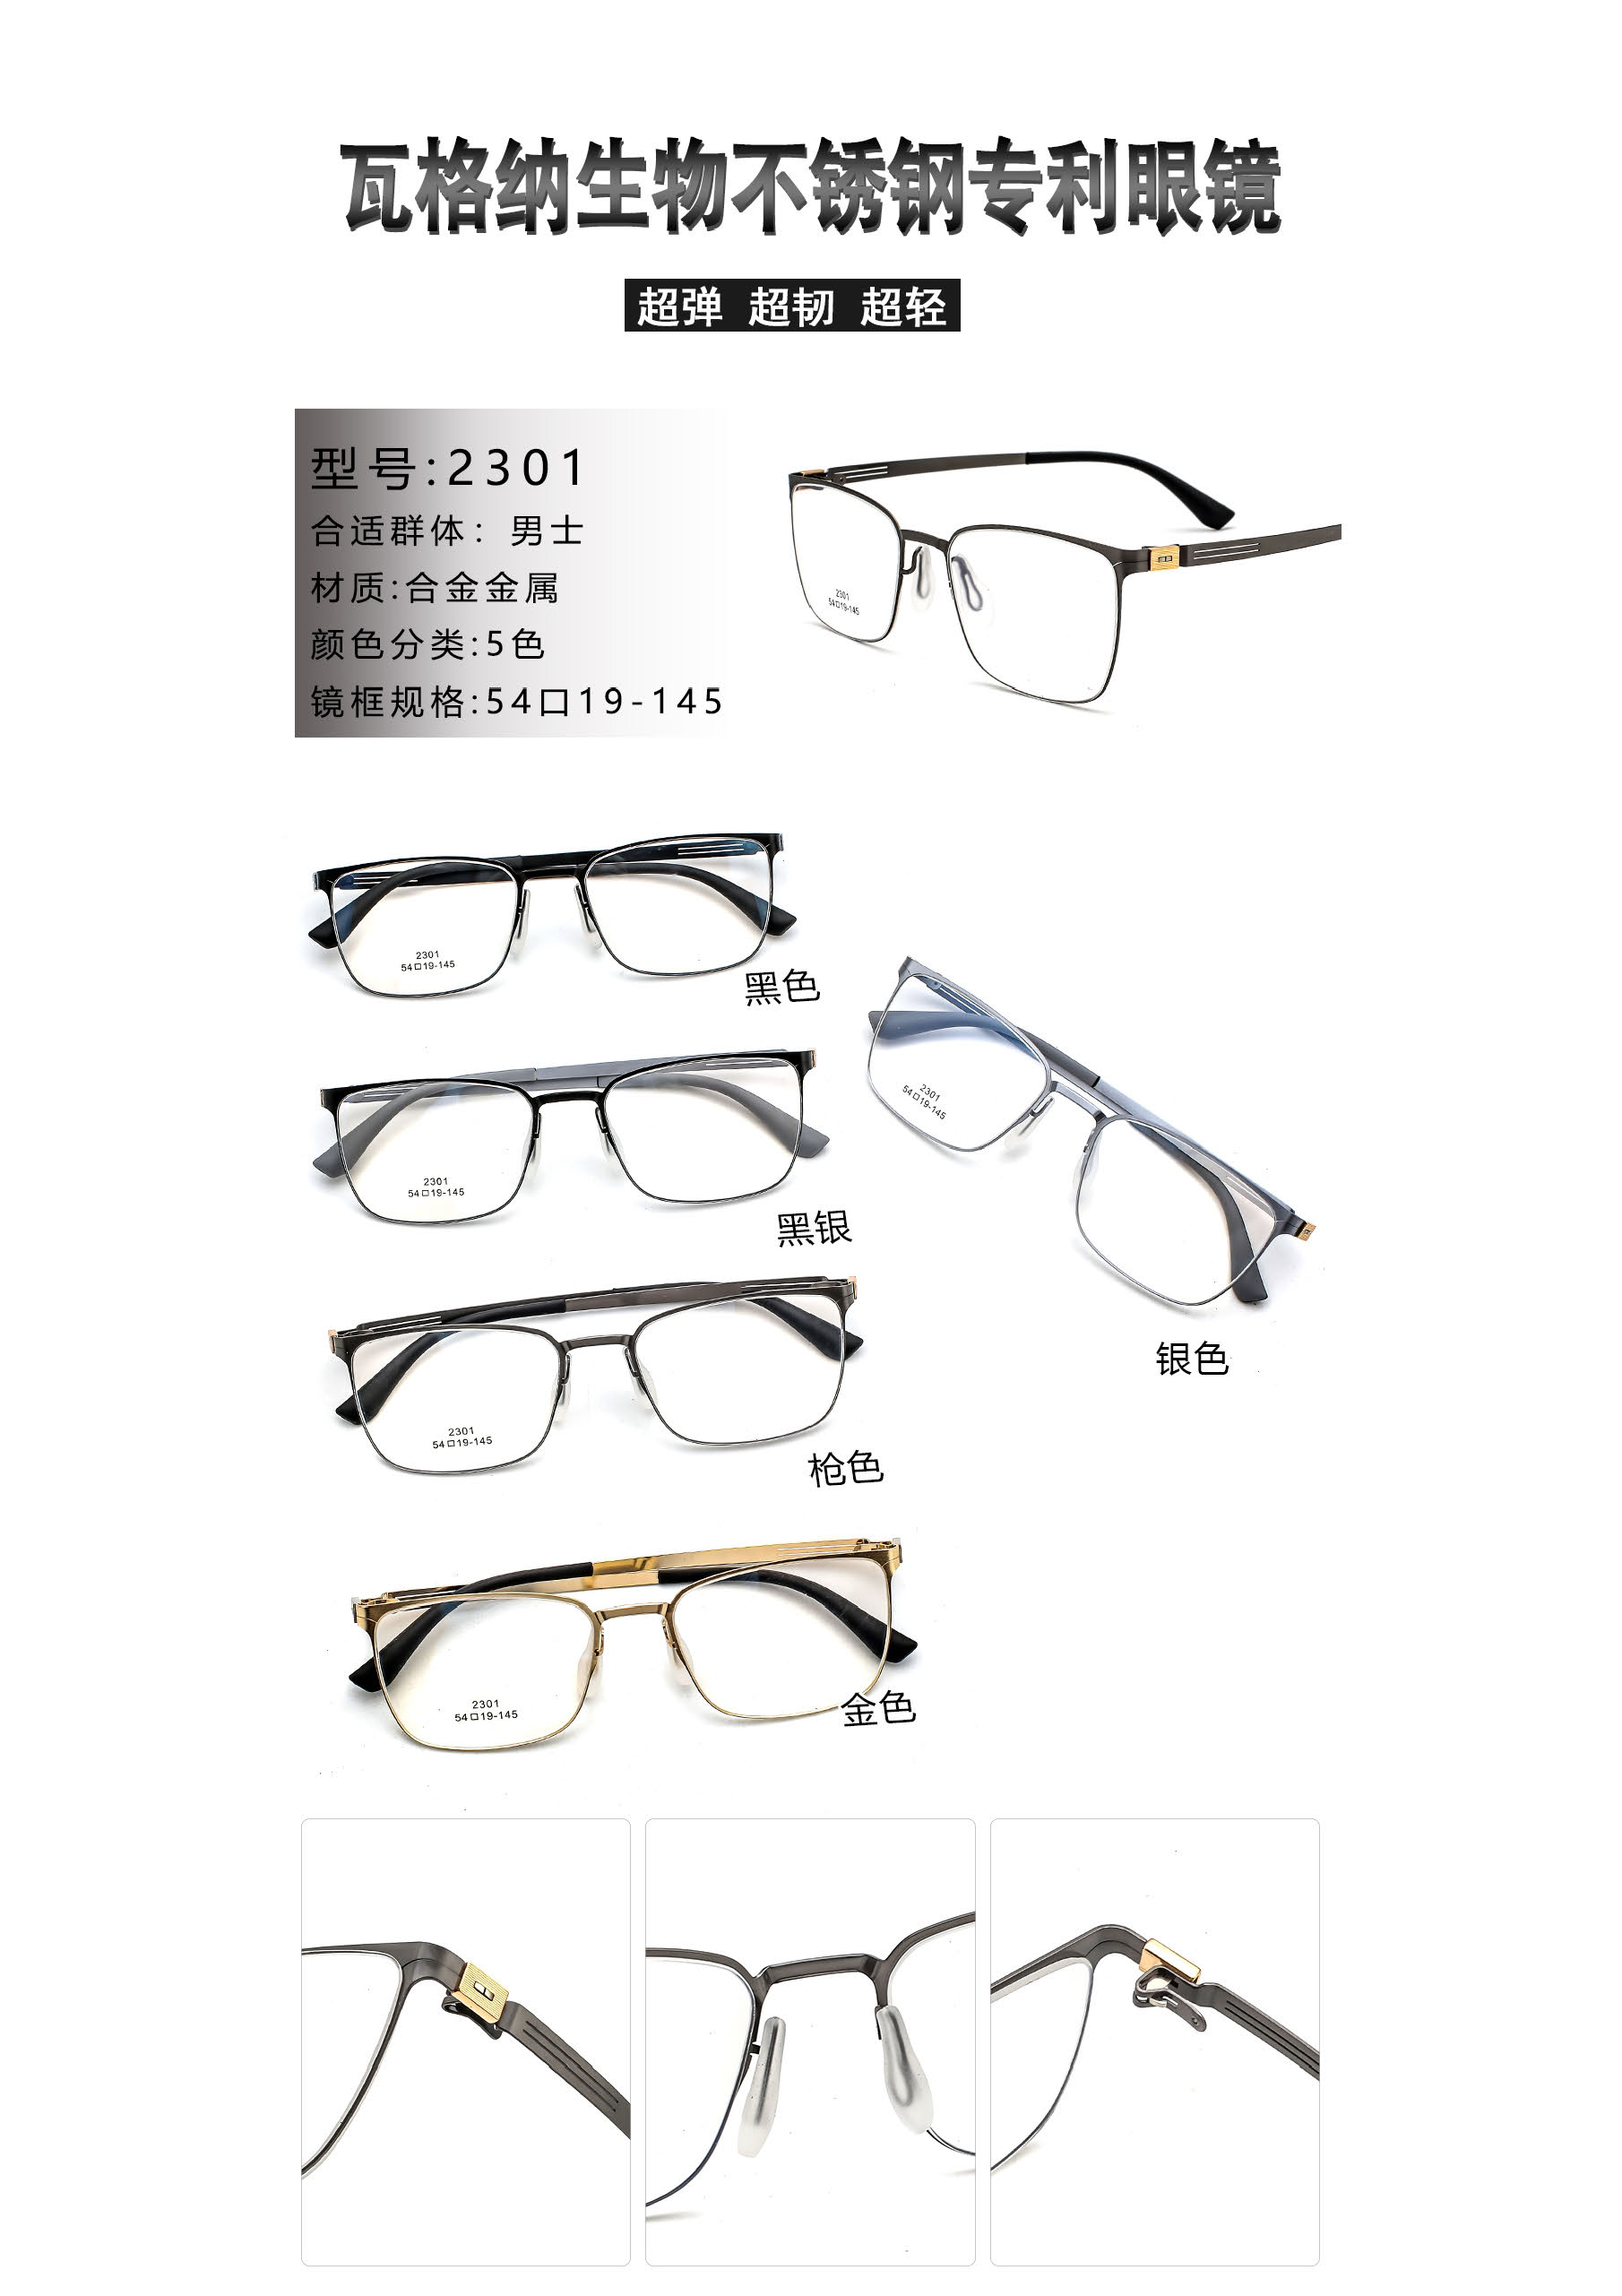 Wagner frames